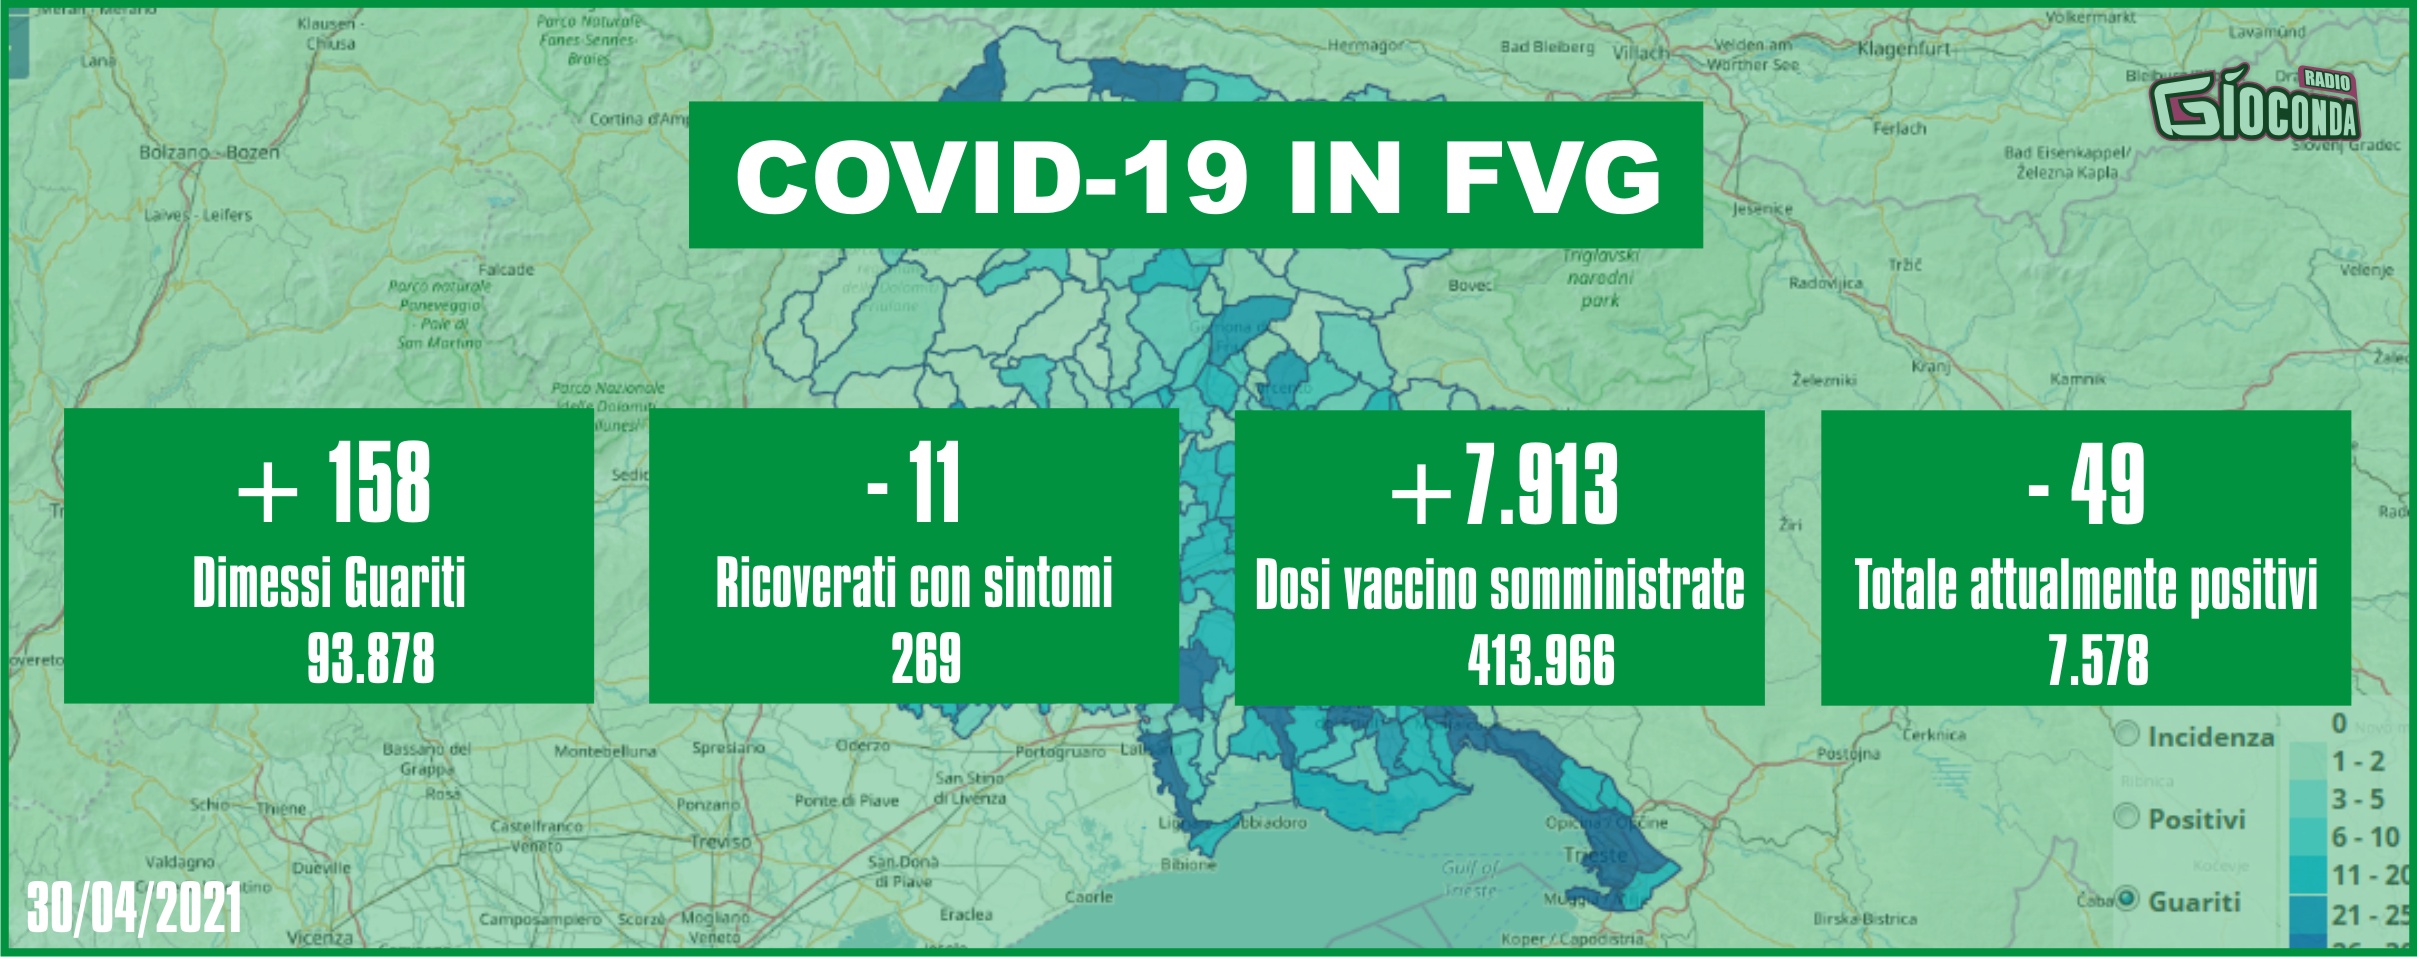 30 aprile 2021 - Aggiornamento casi Covid-19 Dati aggregati quotidiani FRIULI VENEZIA GIULIA